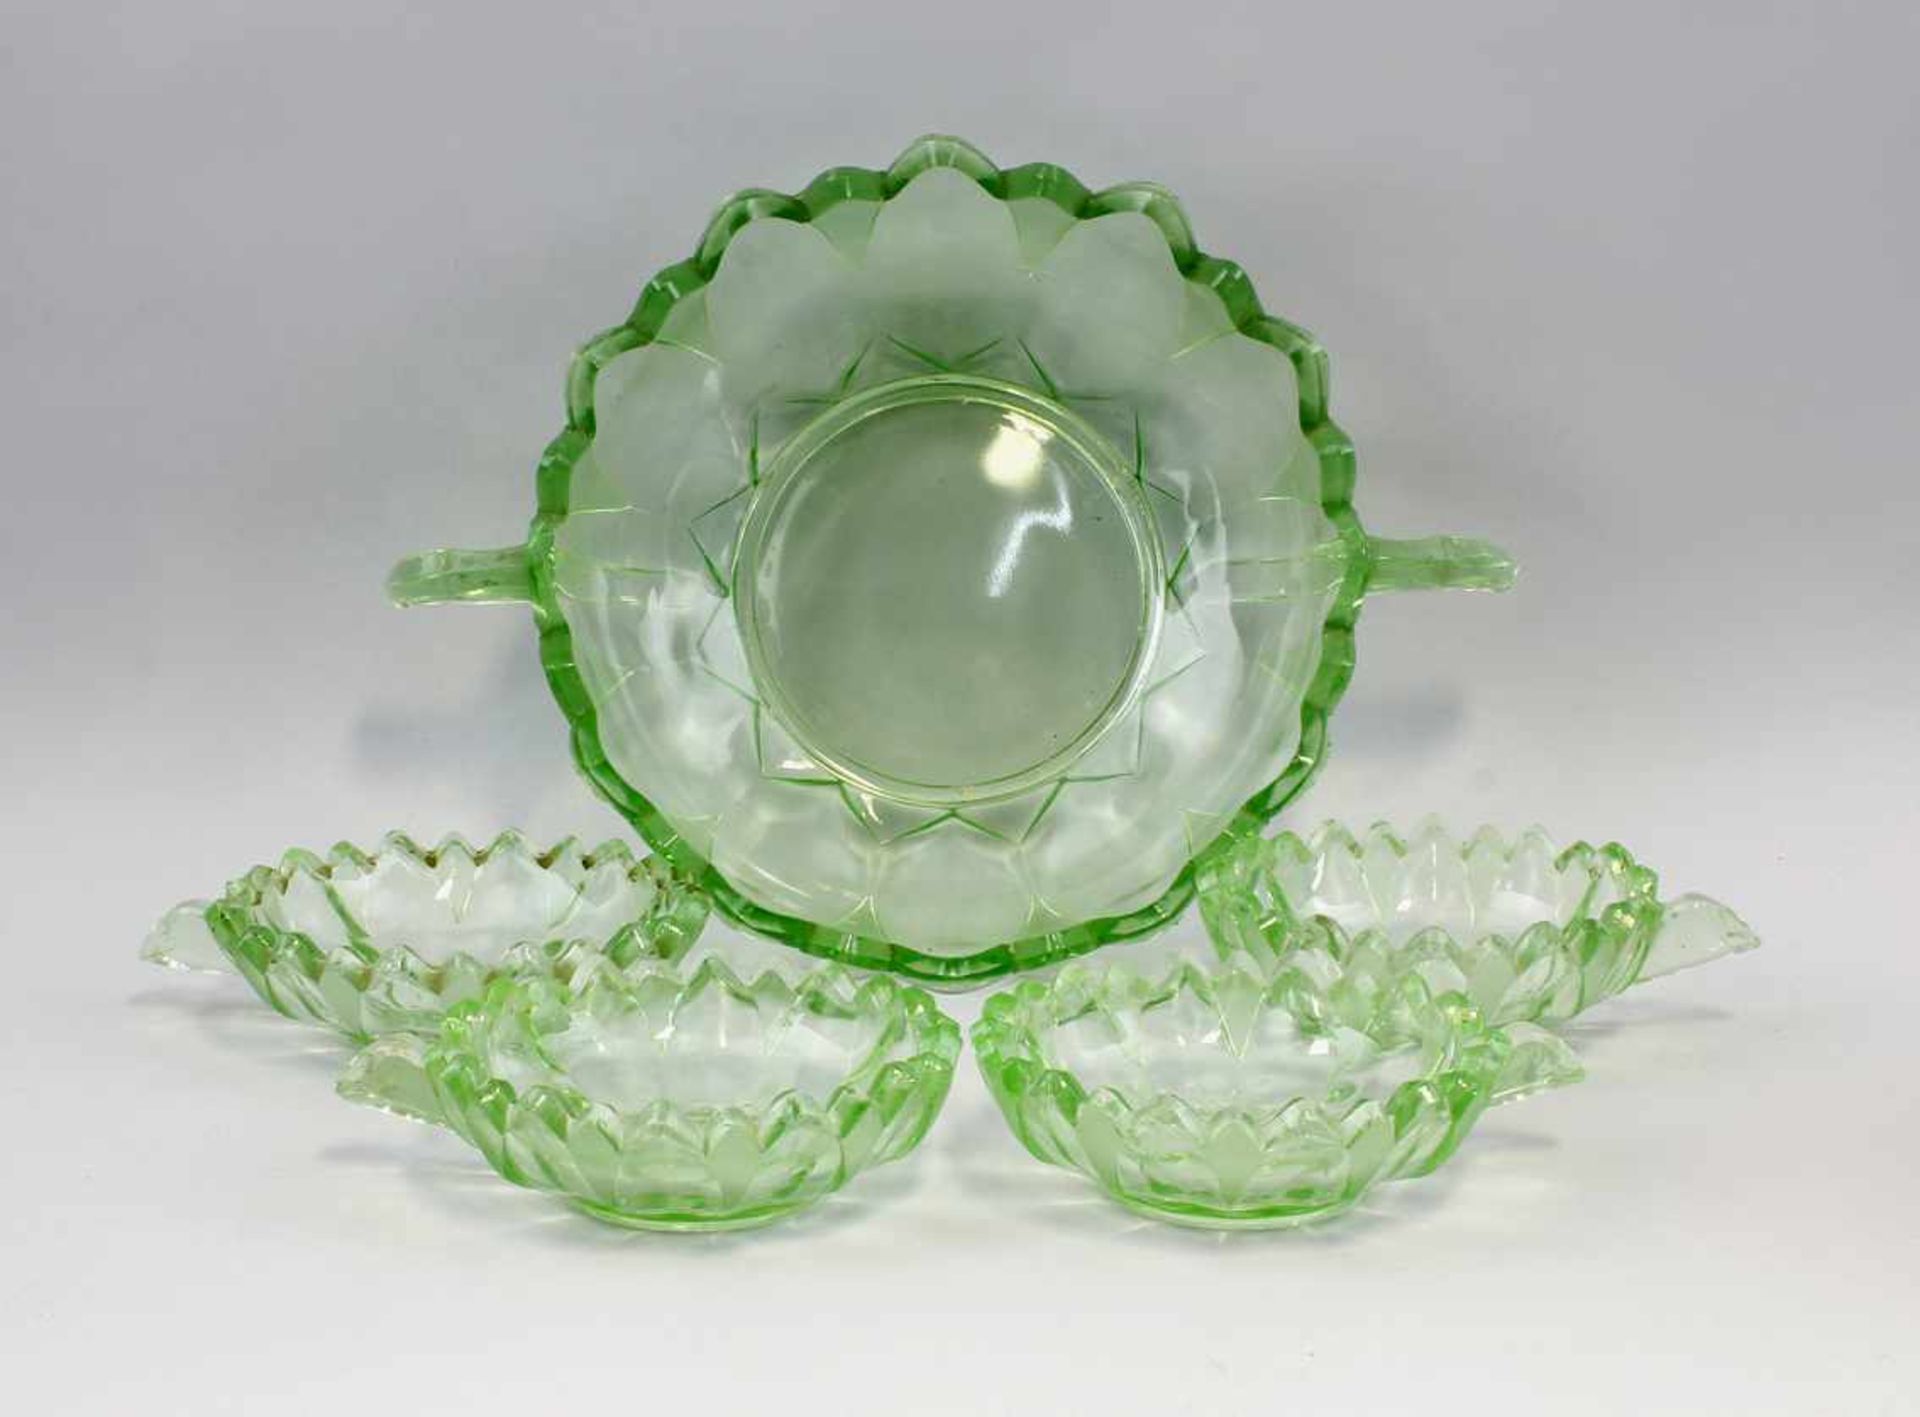 Hellgrüne Dessertgarnitur Art déco.. um 1930, bestehend aus Schale und 4 Schälchen, hellgrünes Glas,